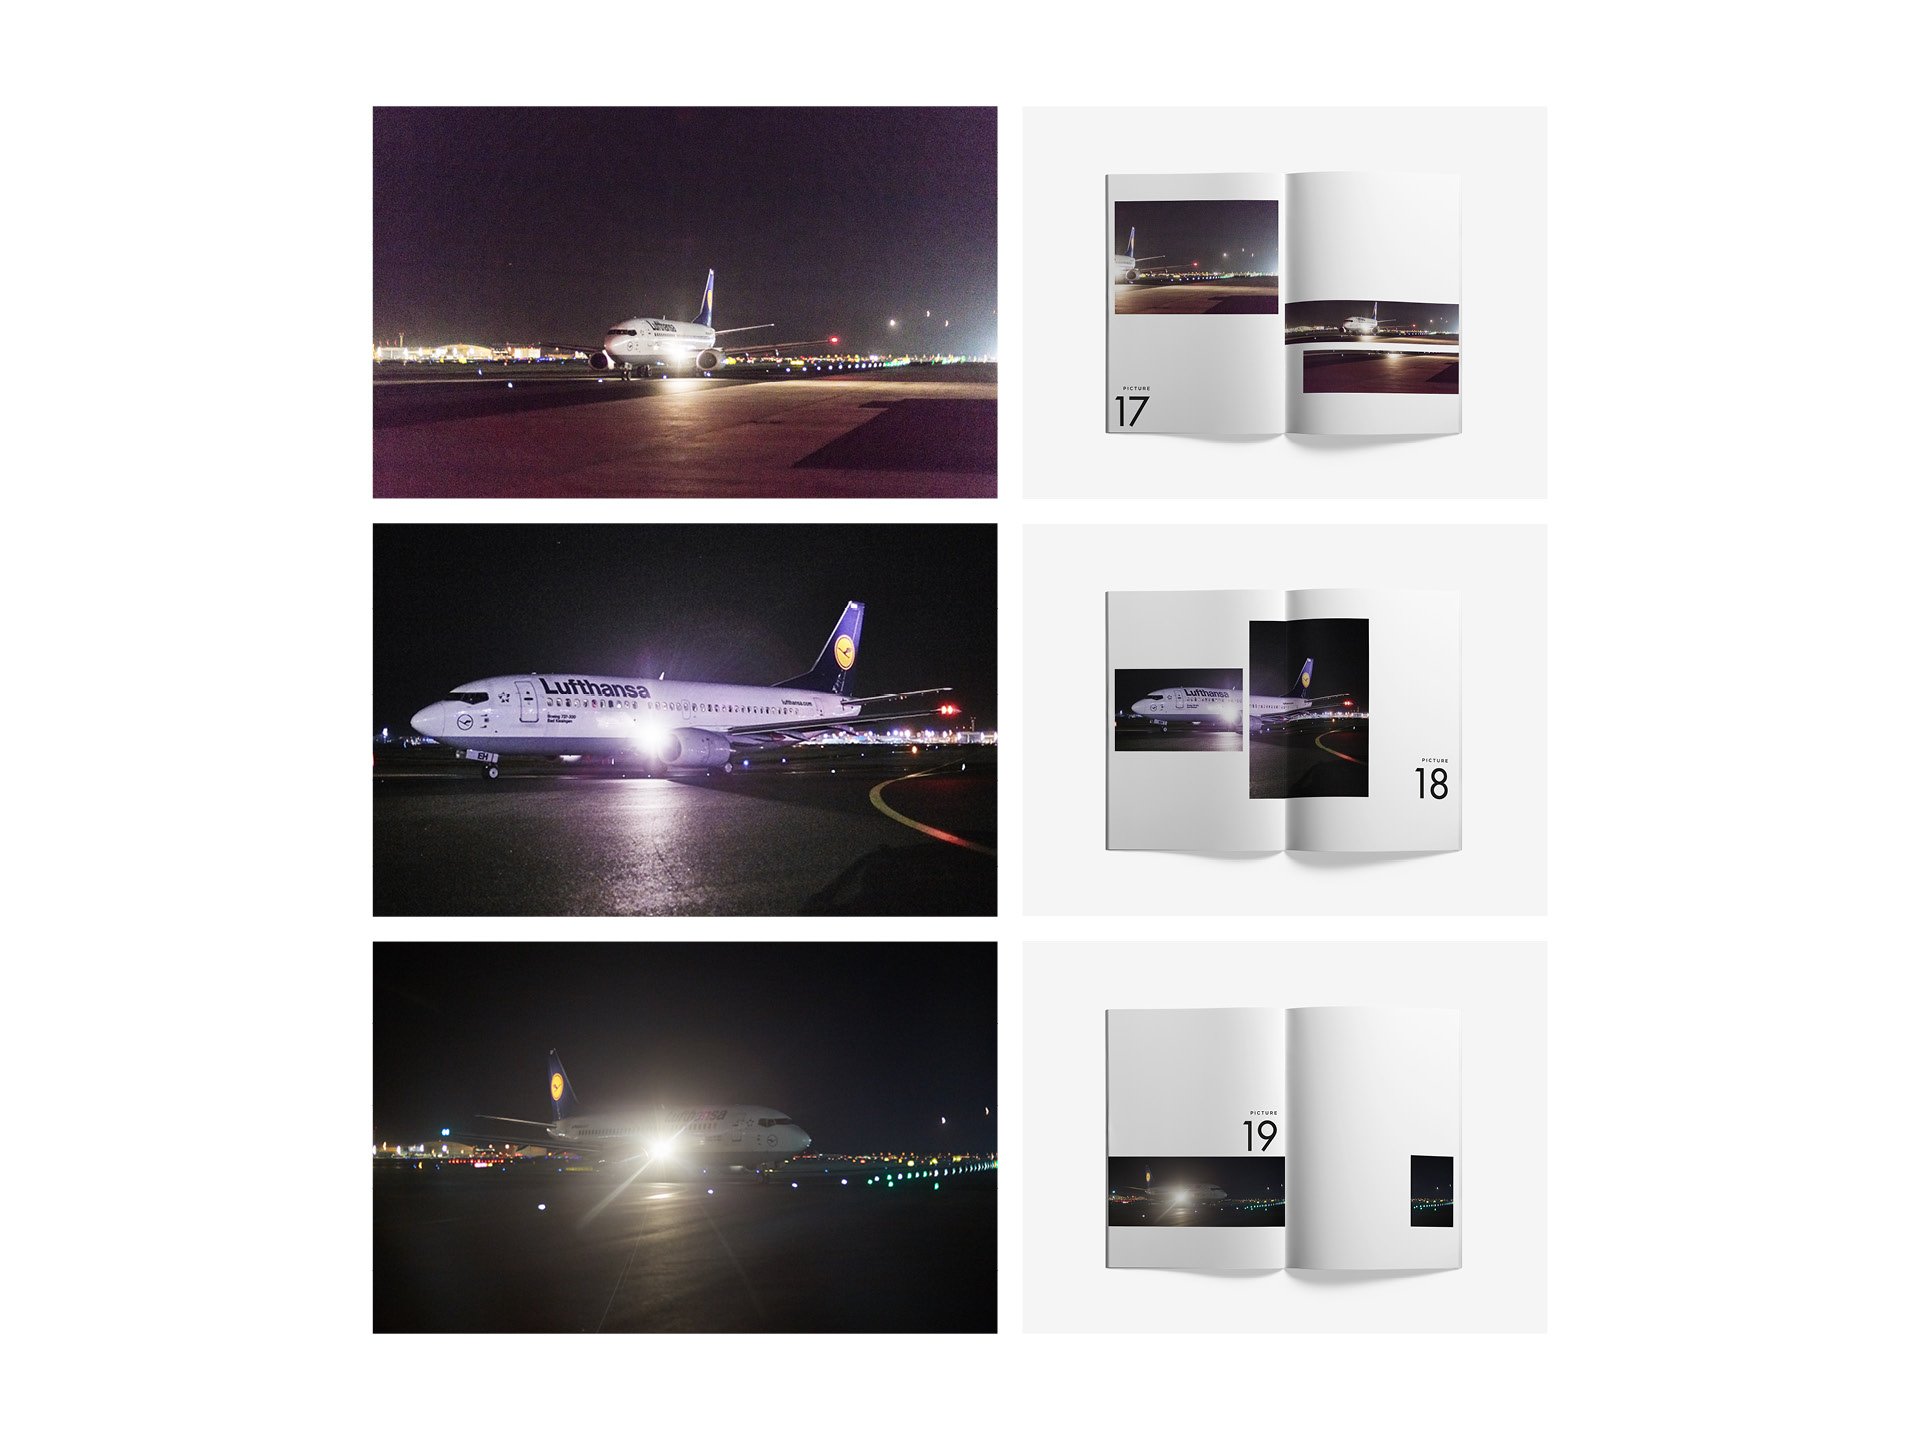 Bureau-Mitte-Editorial-Design-Lufthansa-Boeing-737-5.jpg